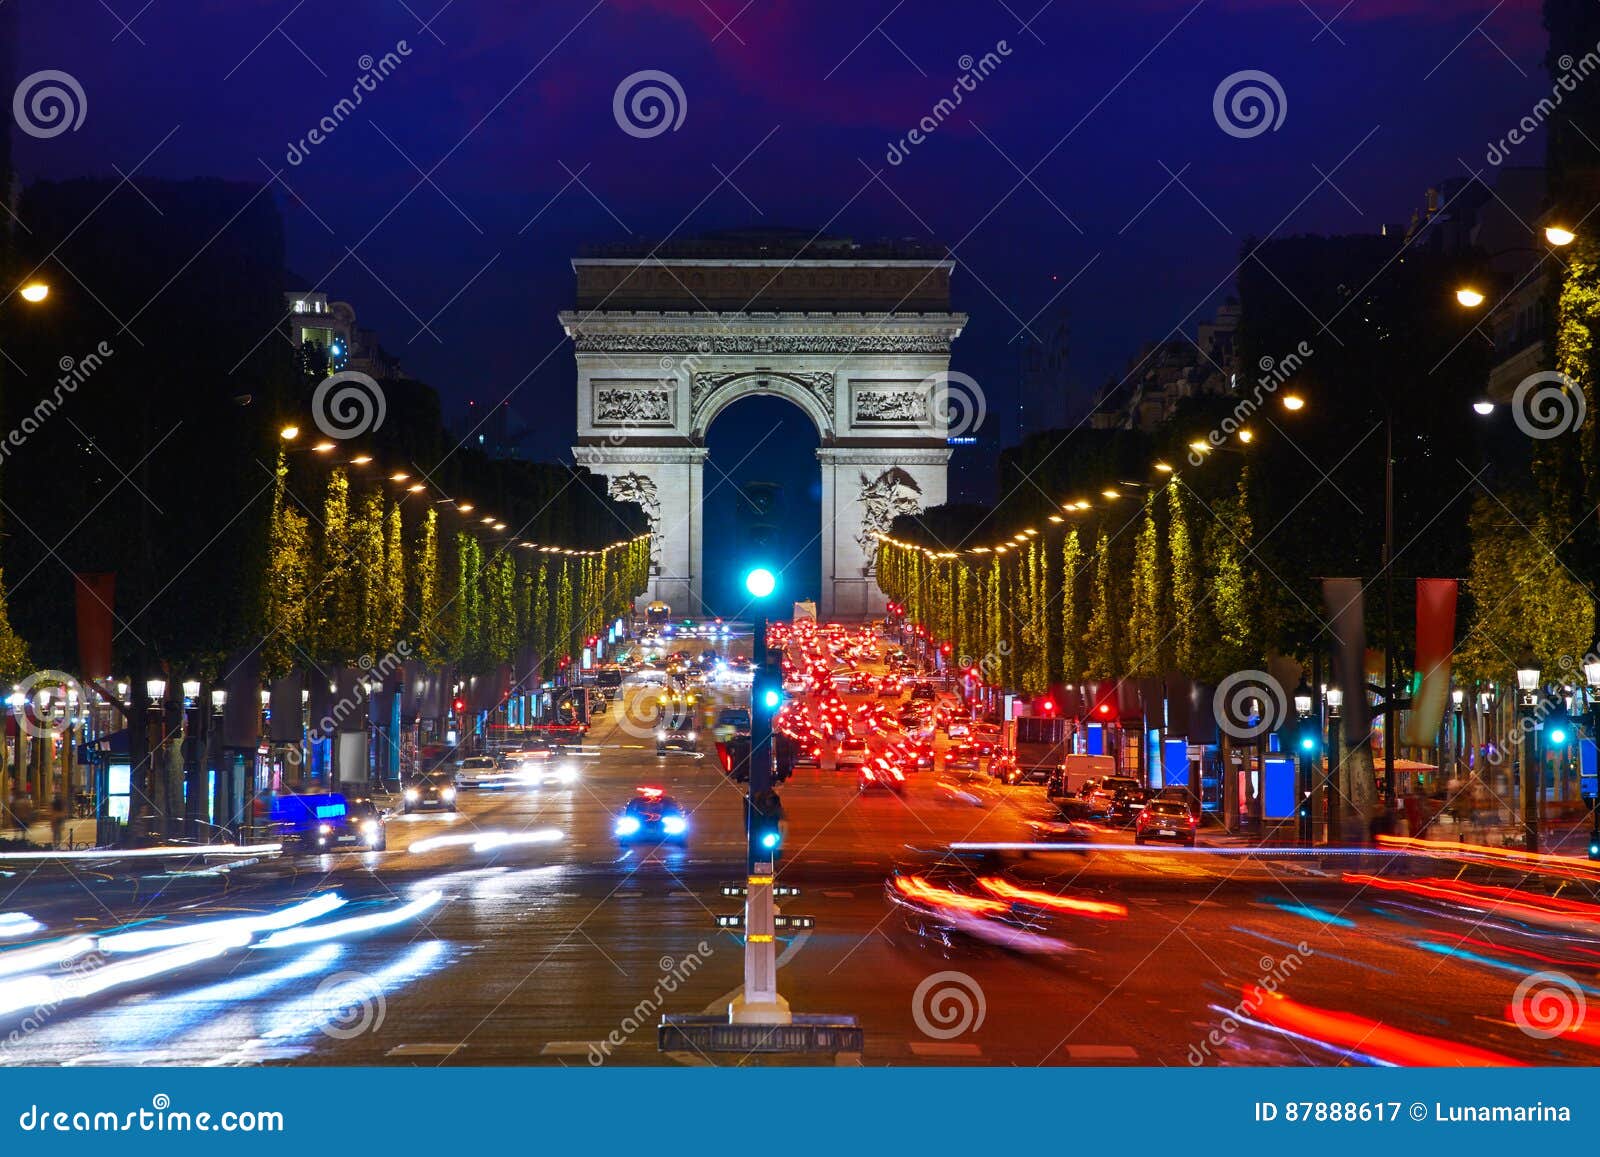 arc de triomphe in paris arch of triumph